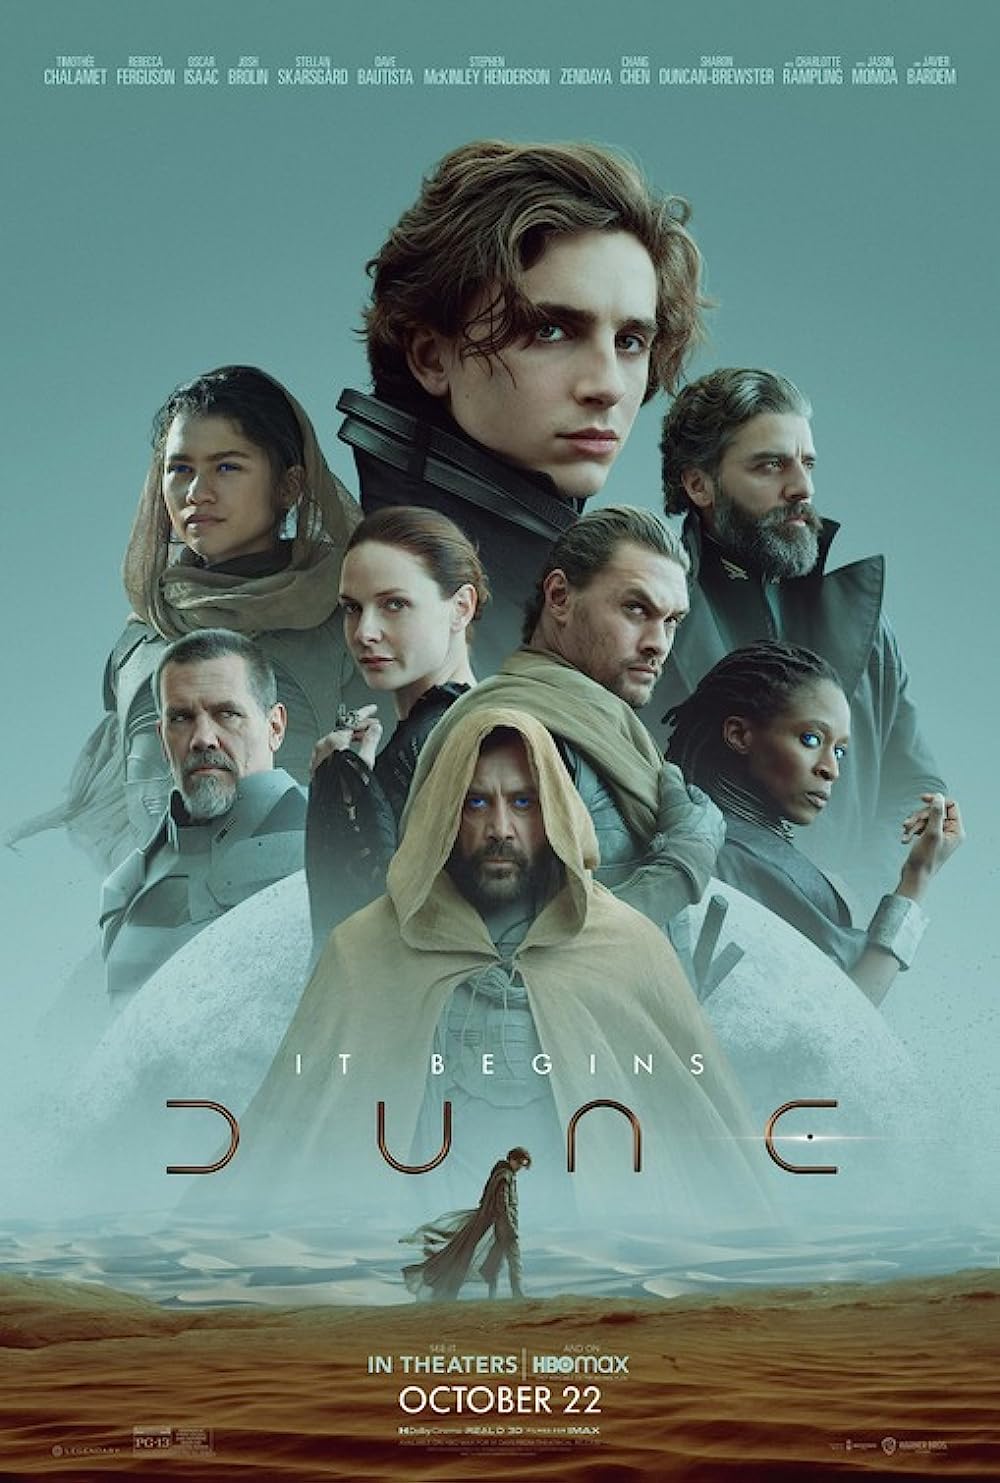 Dune (2020) – ความคลาสสิกที่จินตนาการขึ้นใหม่สำหรับคนรุ่นใหม่